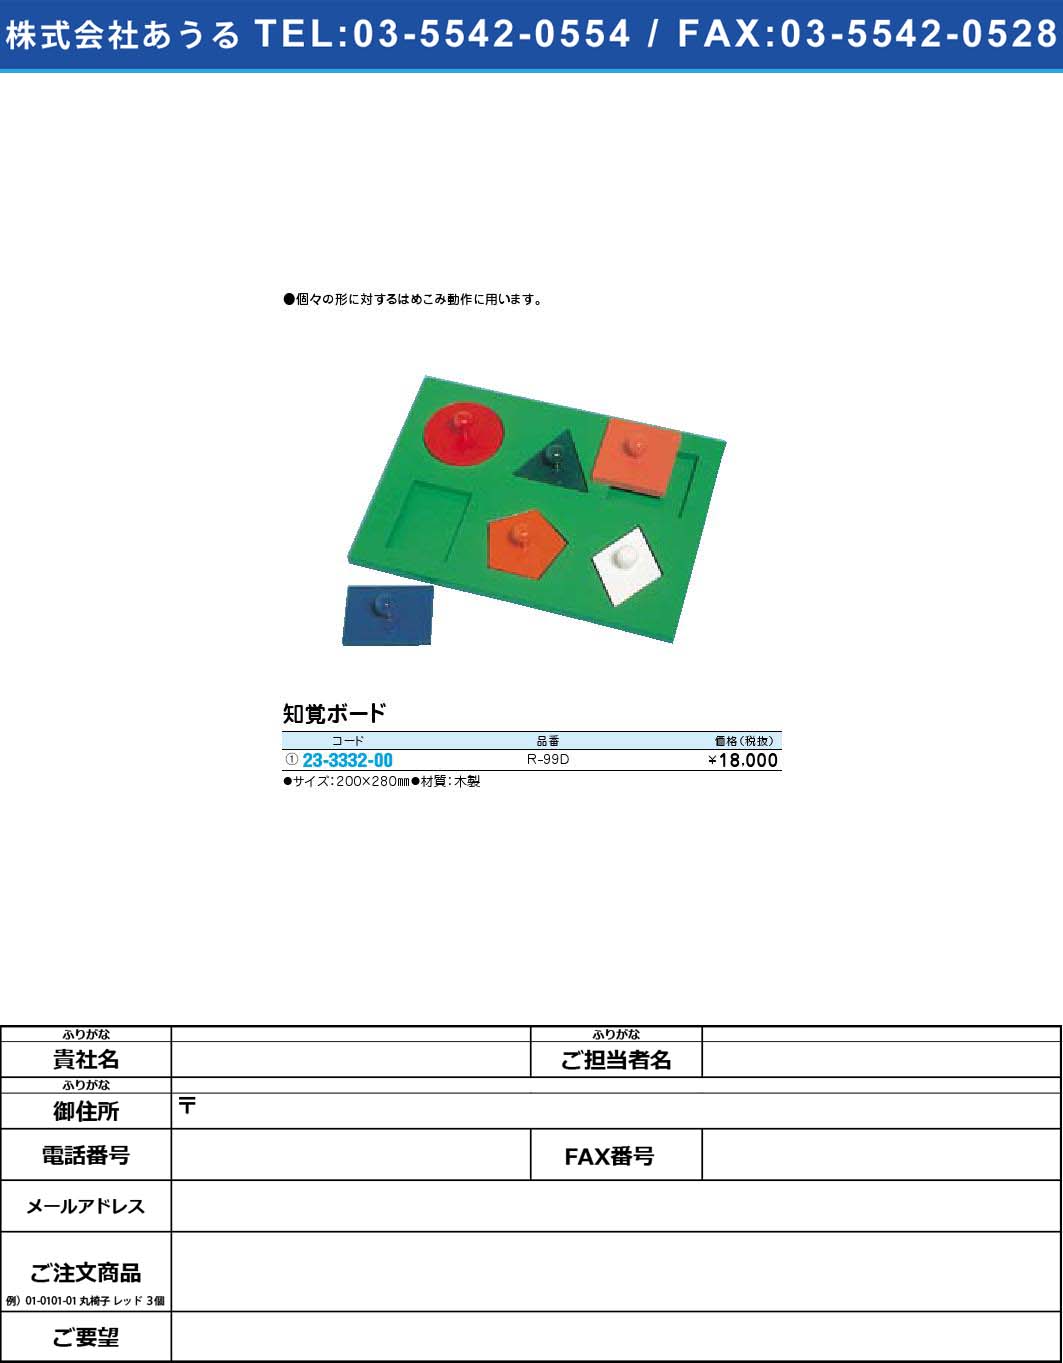 (23-3332-00)知覚ボード R-99D(23-3332-00)【1個単位】【2009年カタログ商品】